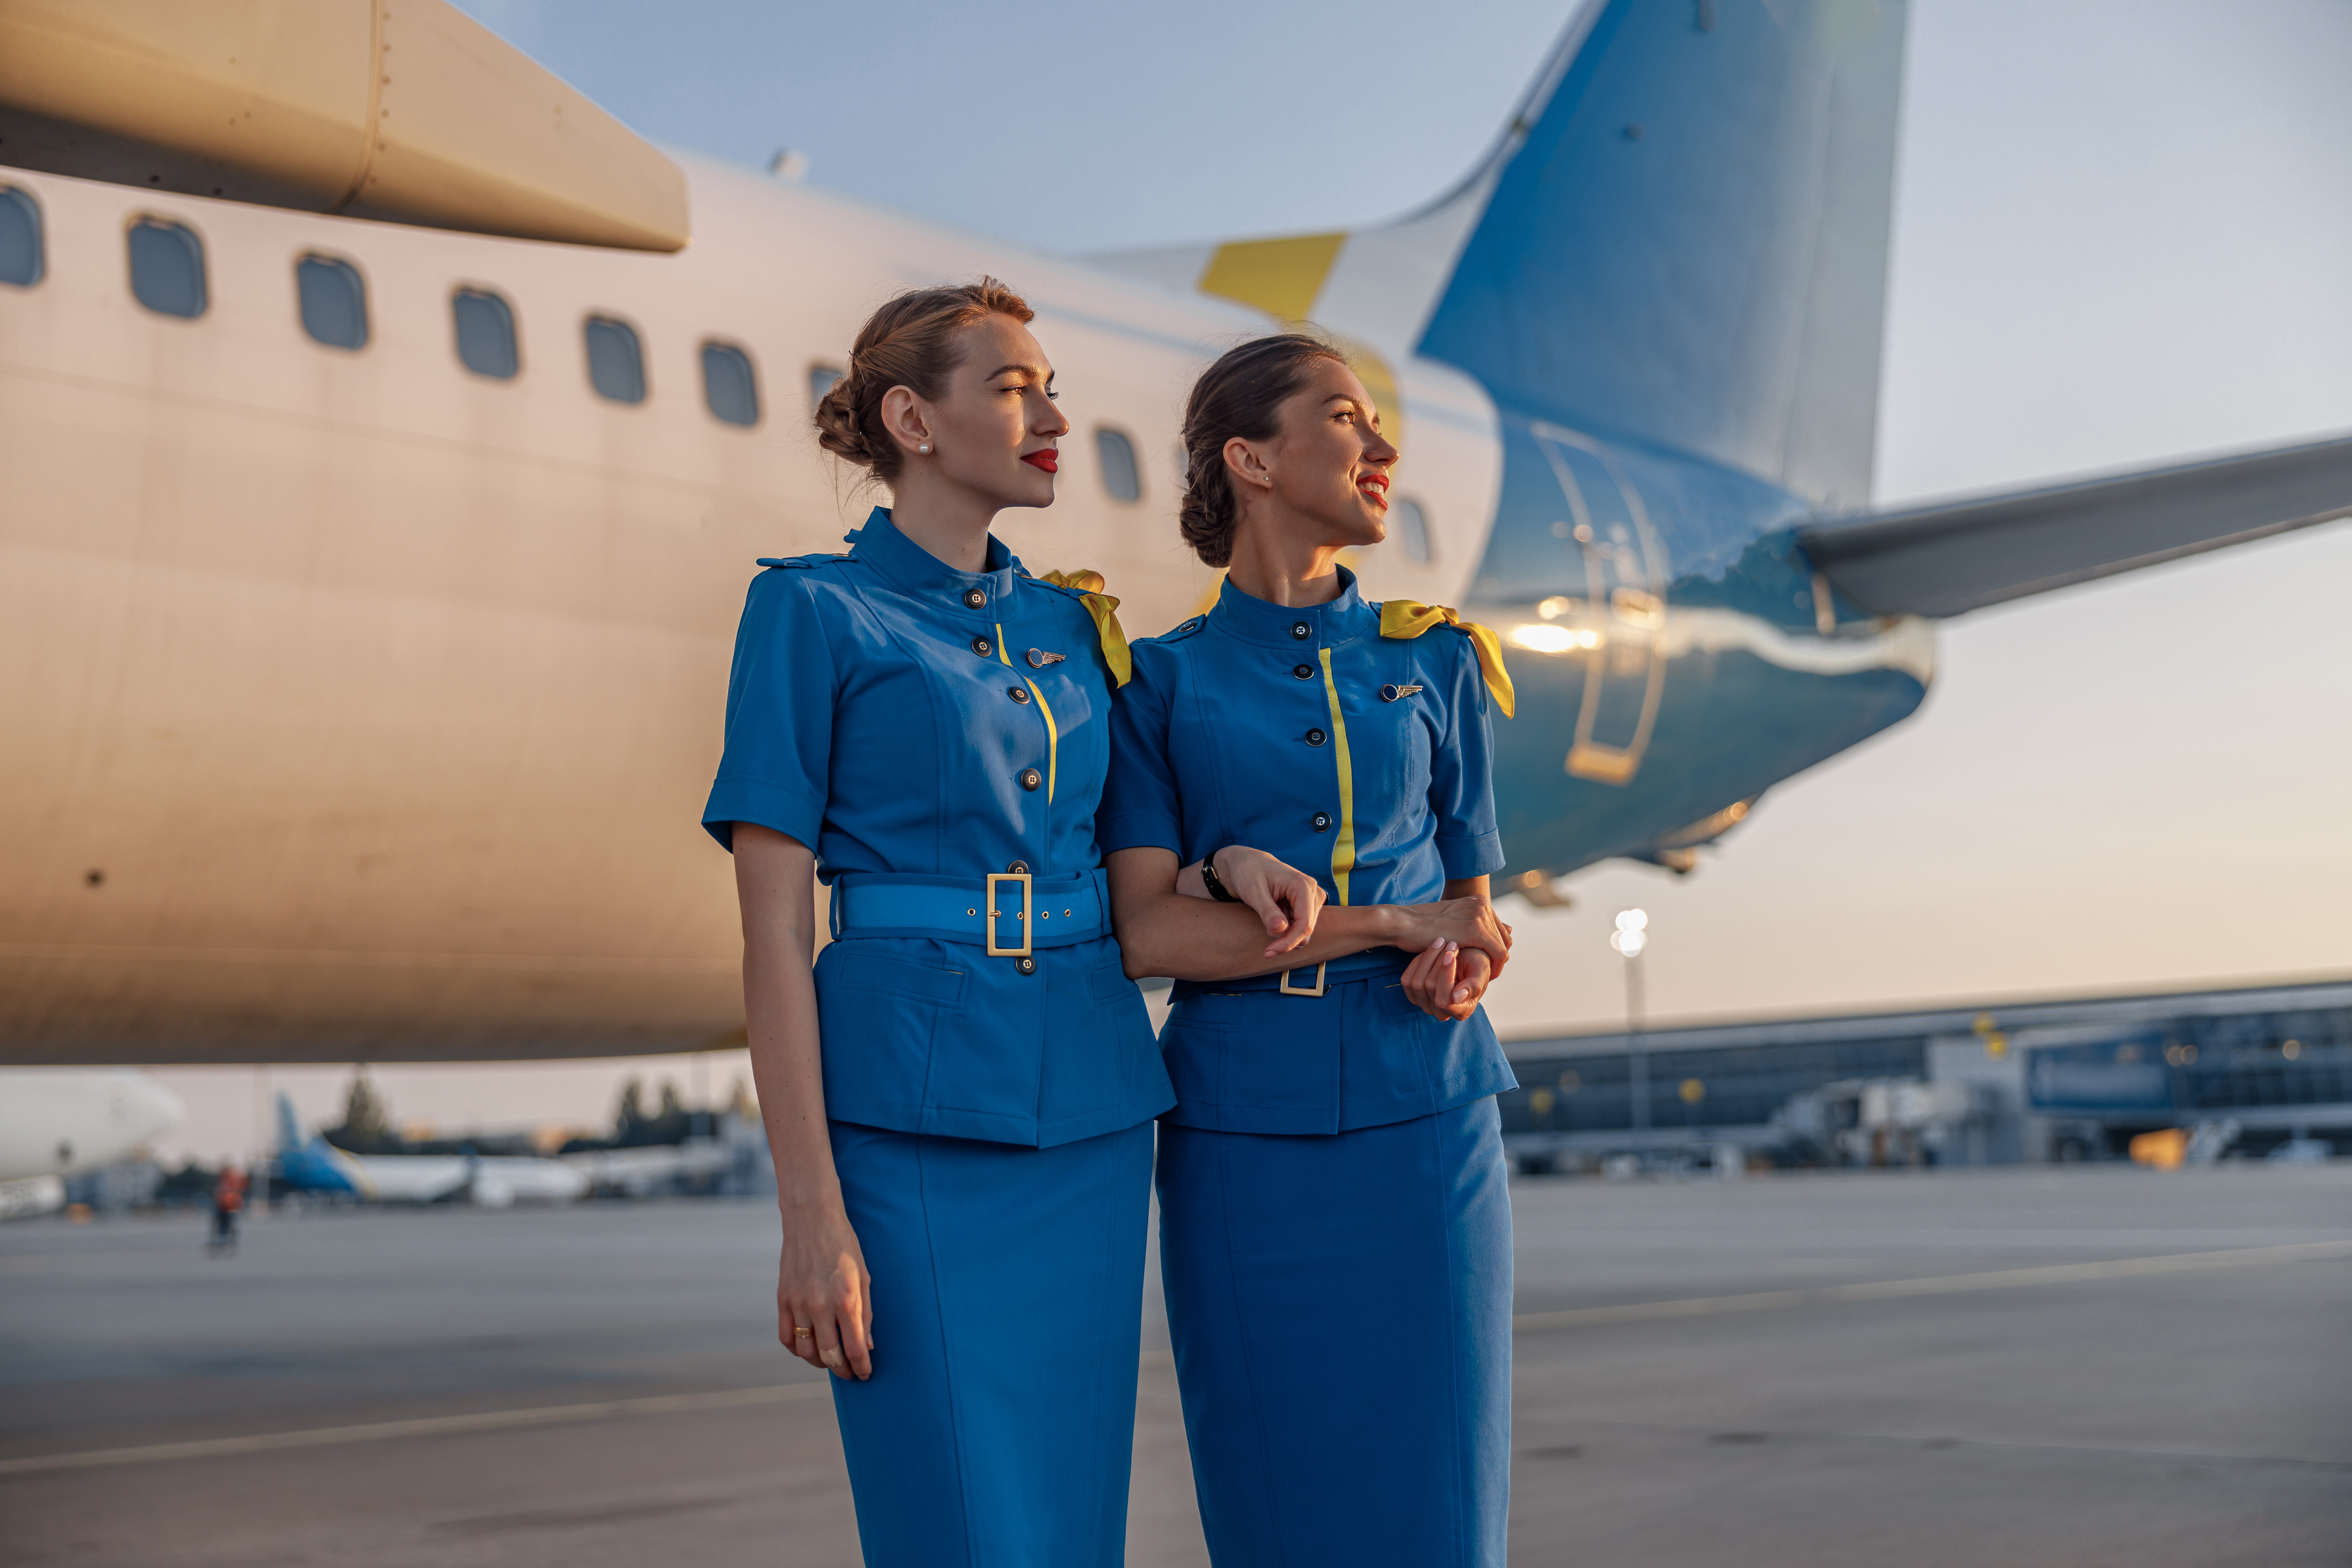 Two flight attendants | Source: Shutterstock